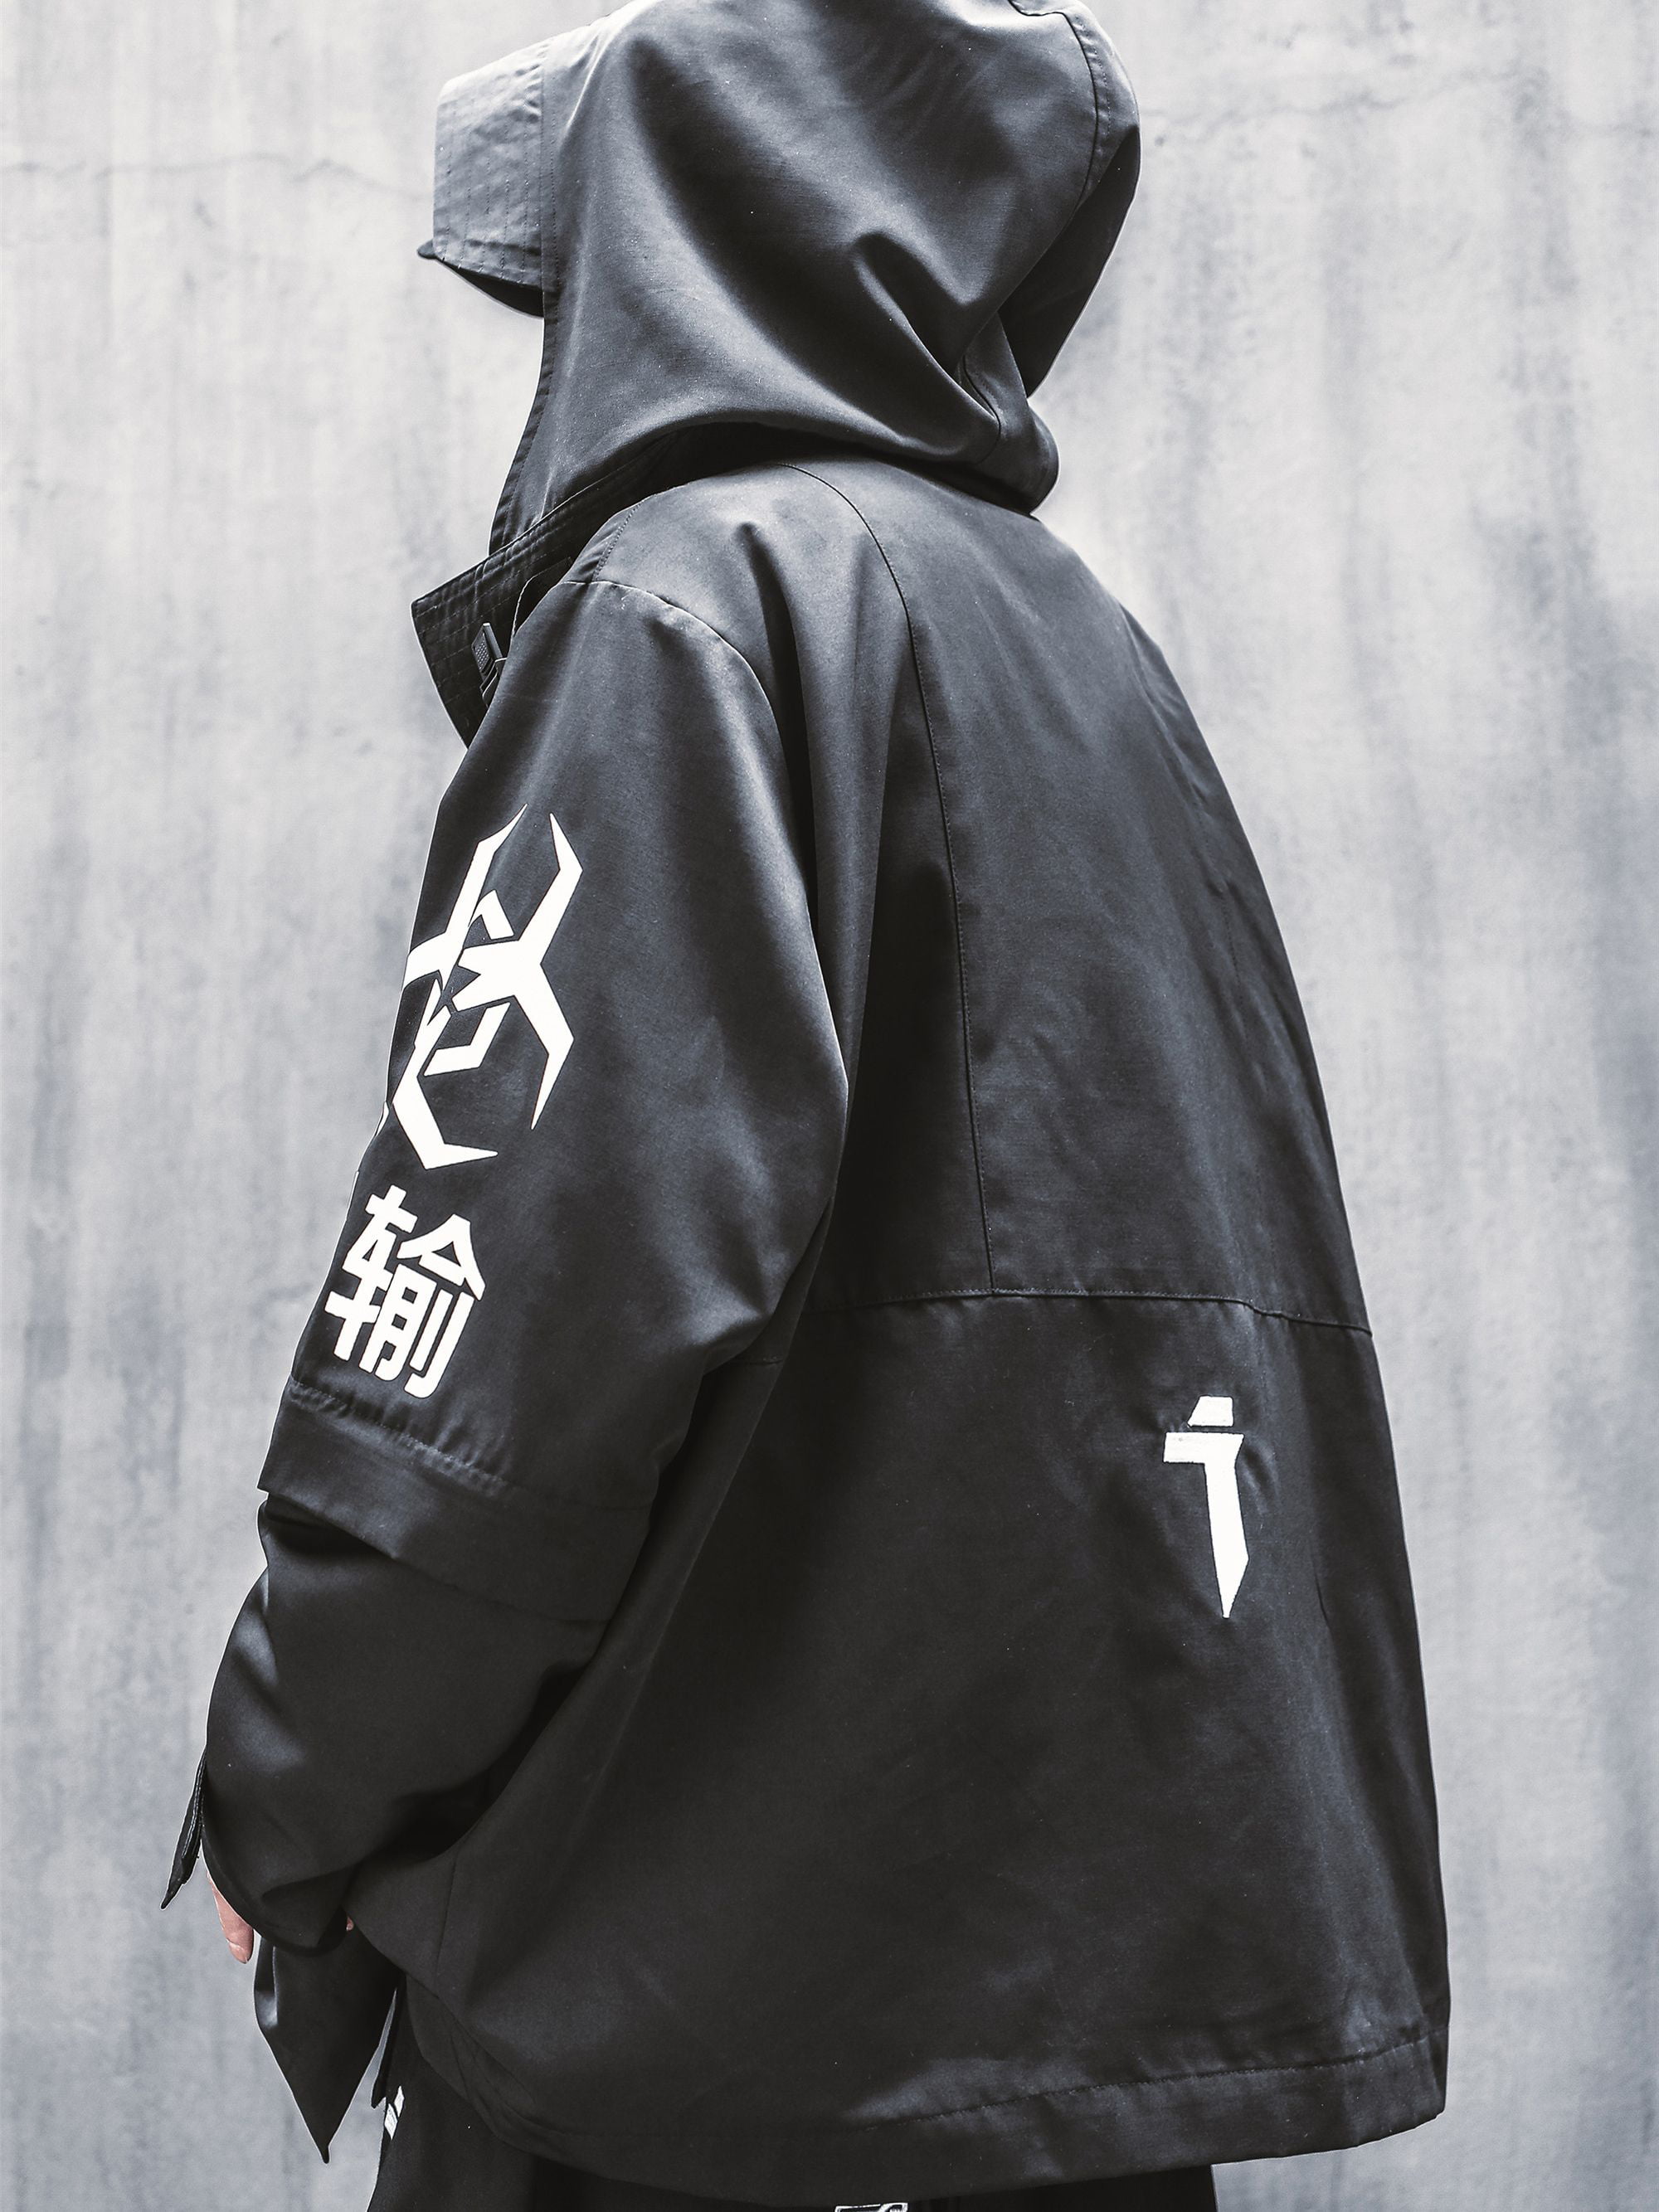 Niepce Inc Japanese Streetwear Zip Up Hooded Black Men's Techwear Jacket